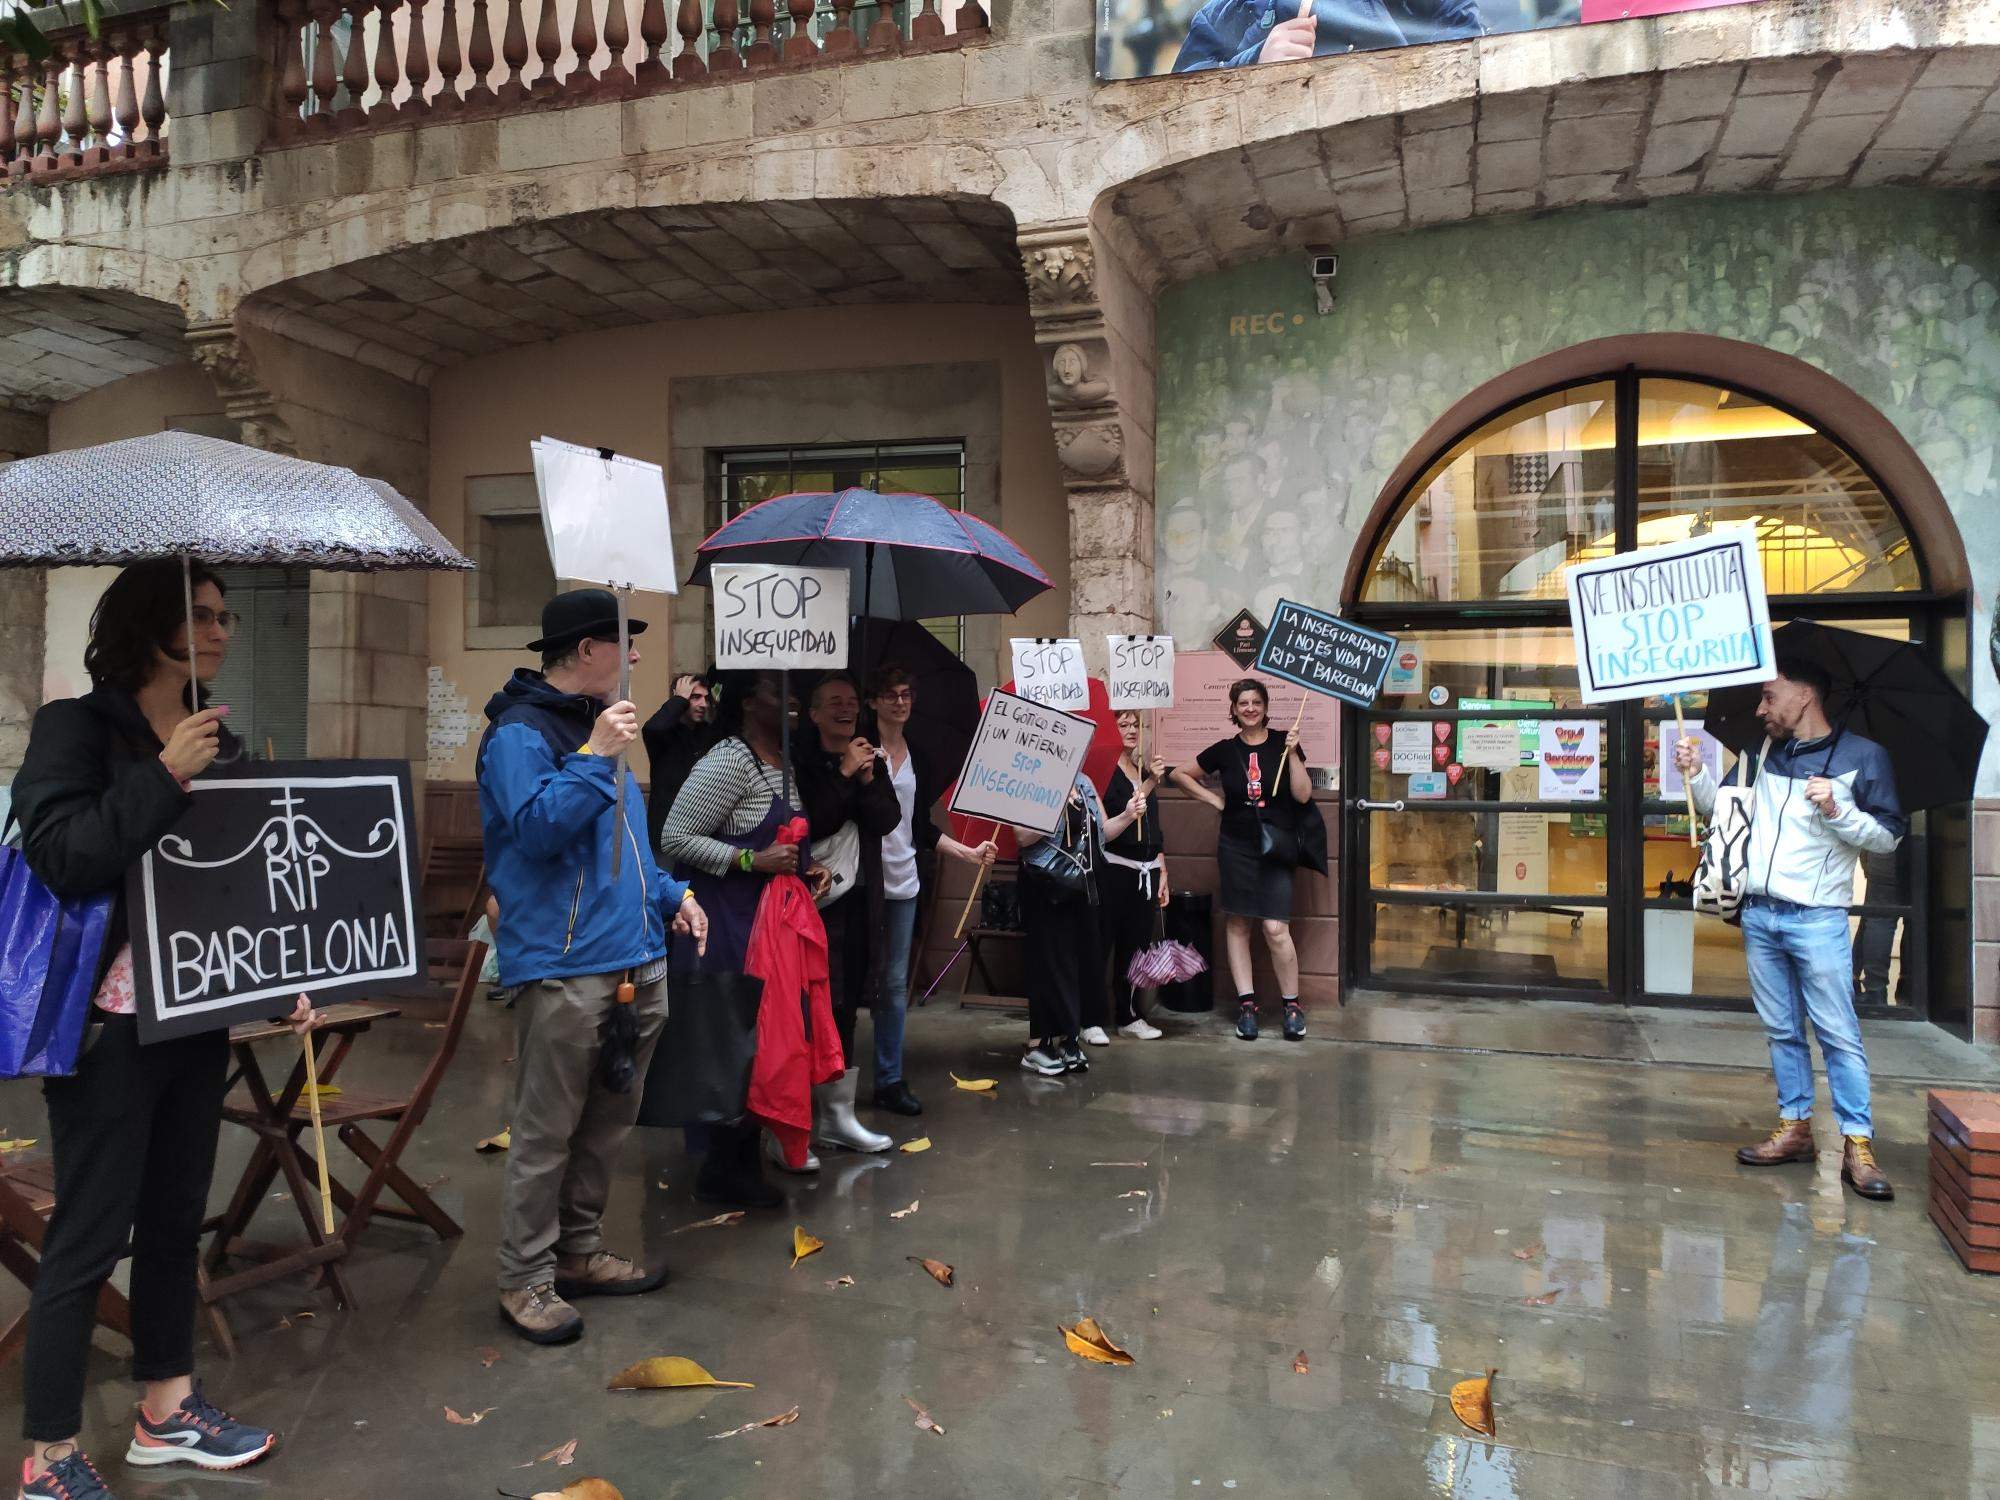 Veïns del Gòtic protesten per la inseguretat al barri: “És un infern”